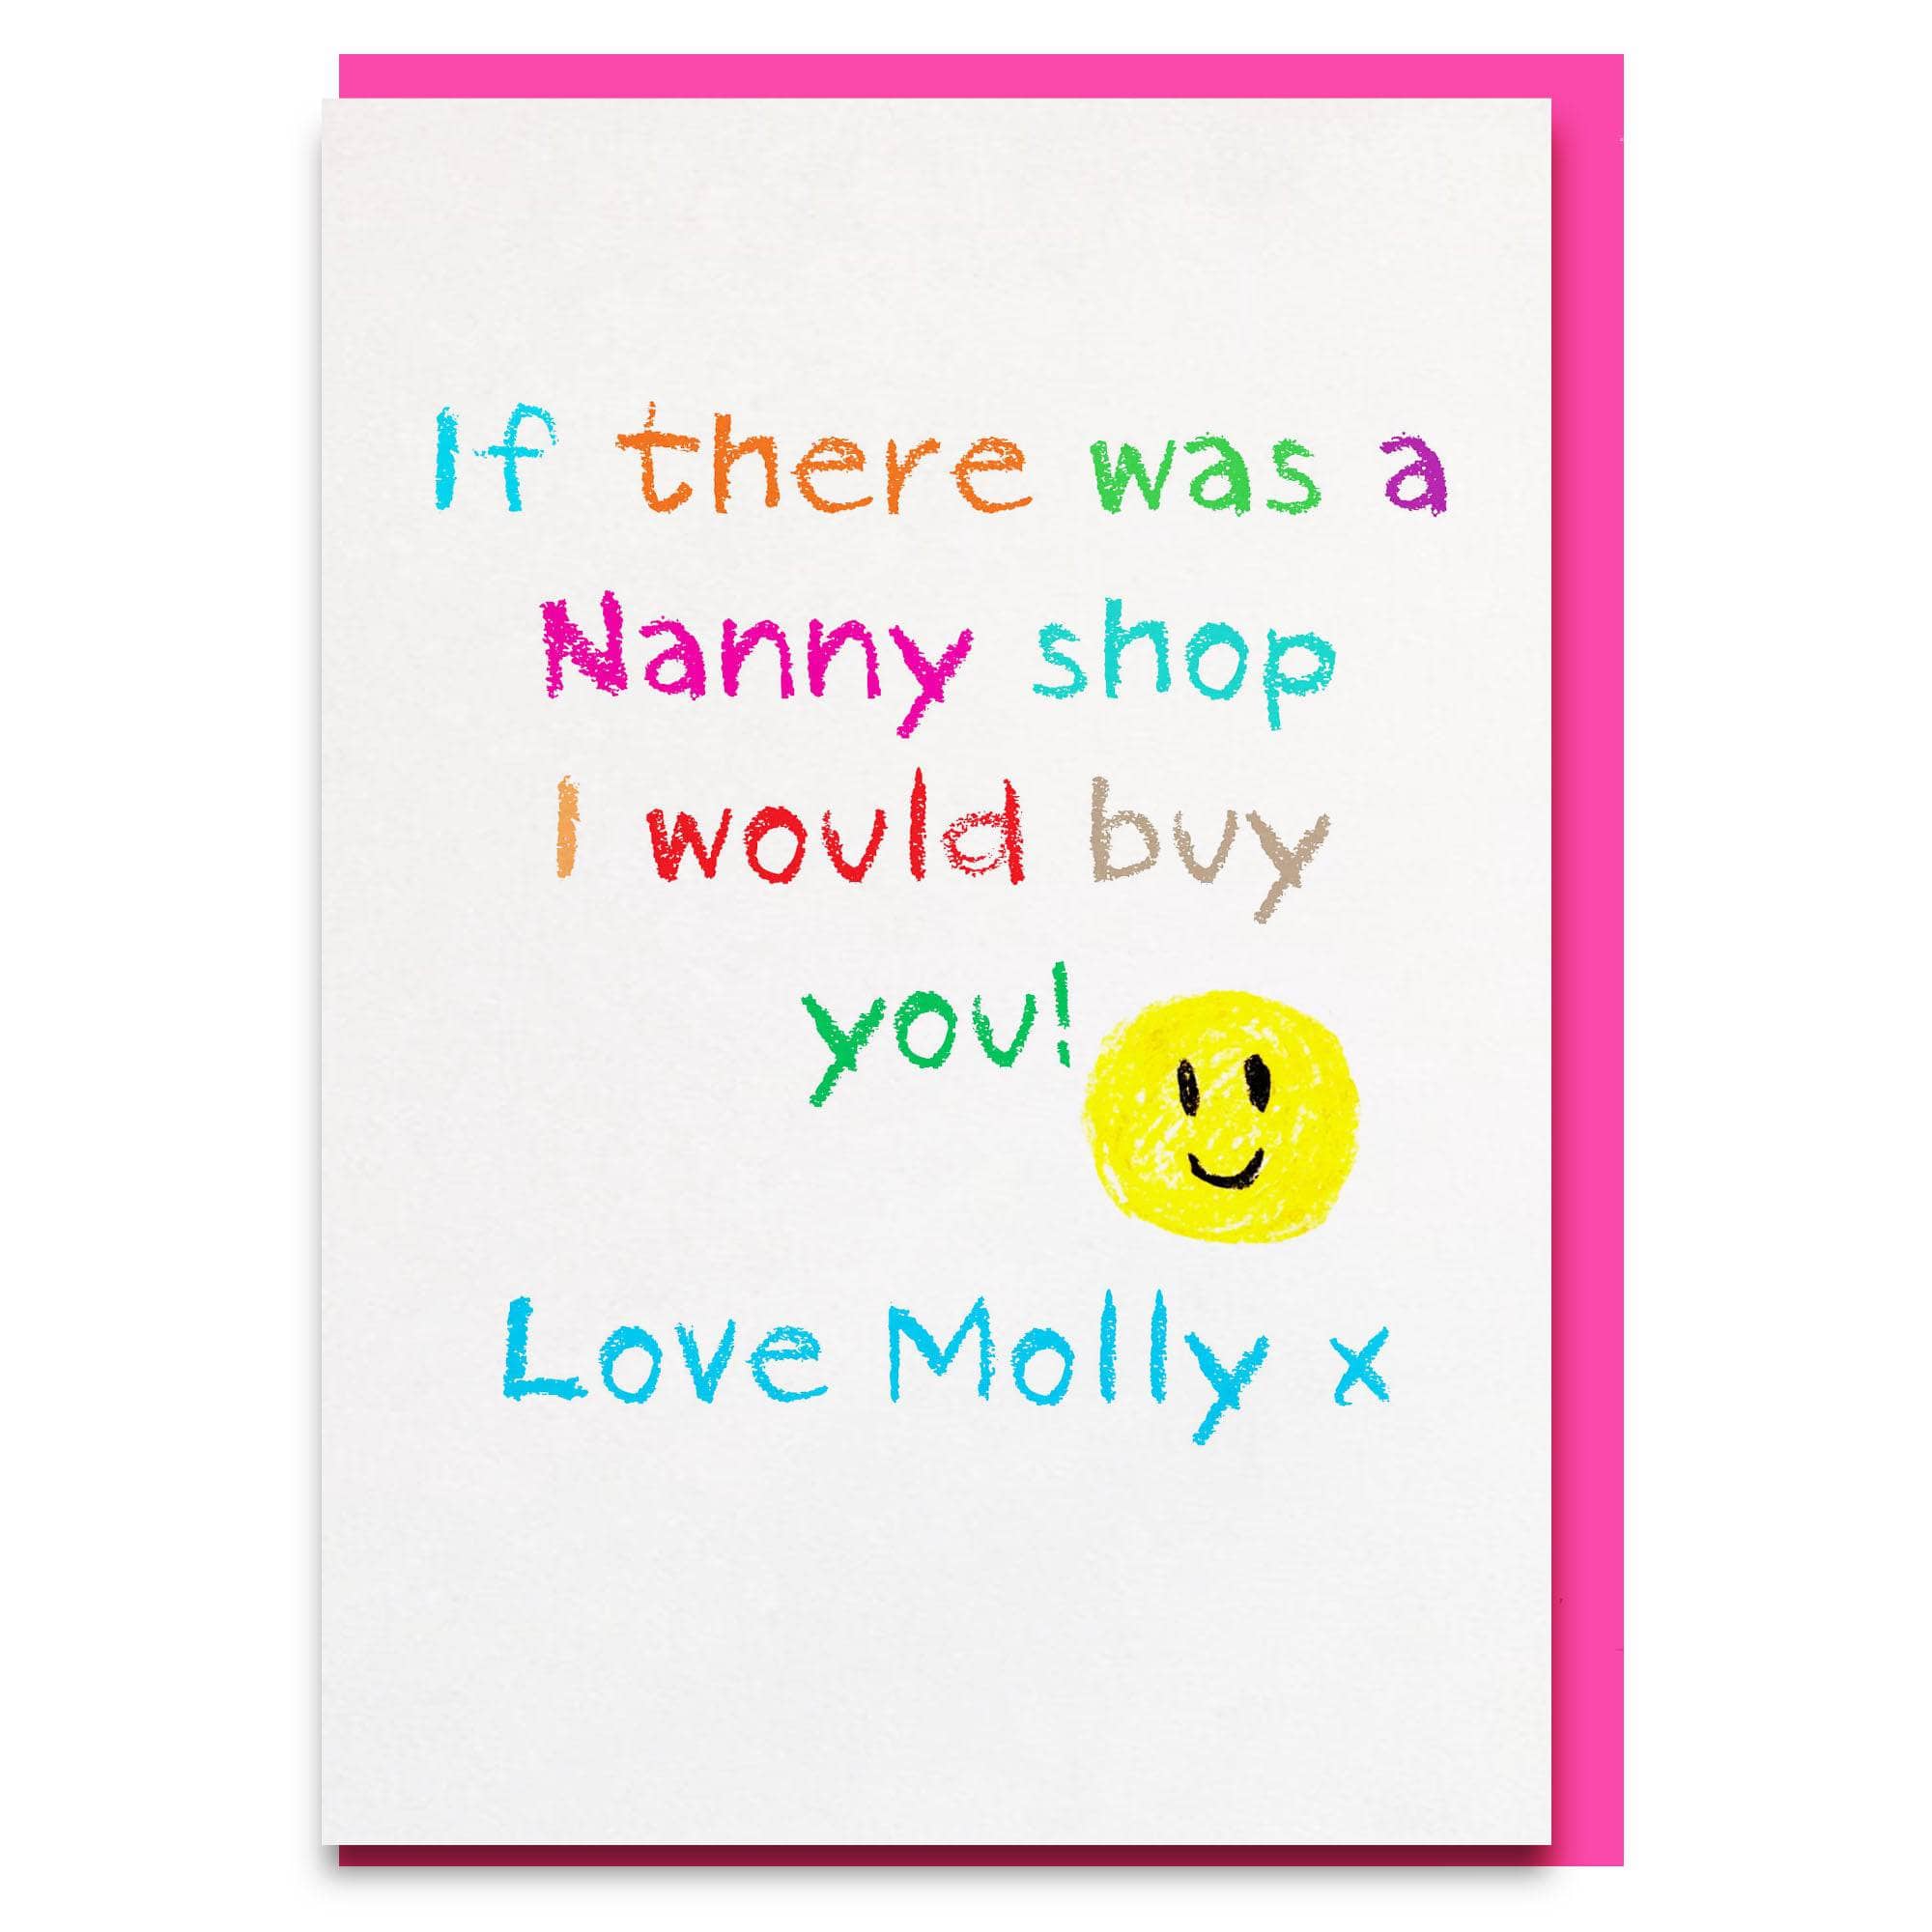 Nanny shop